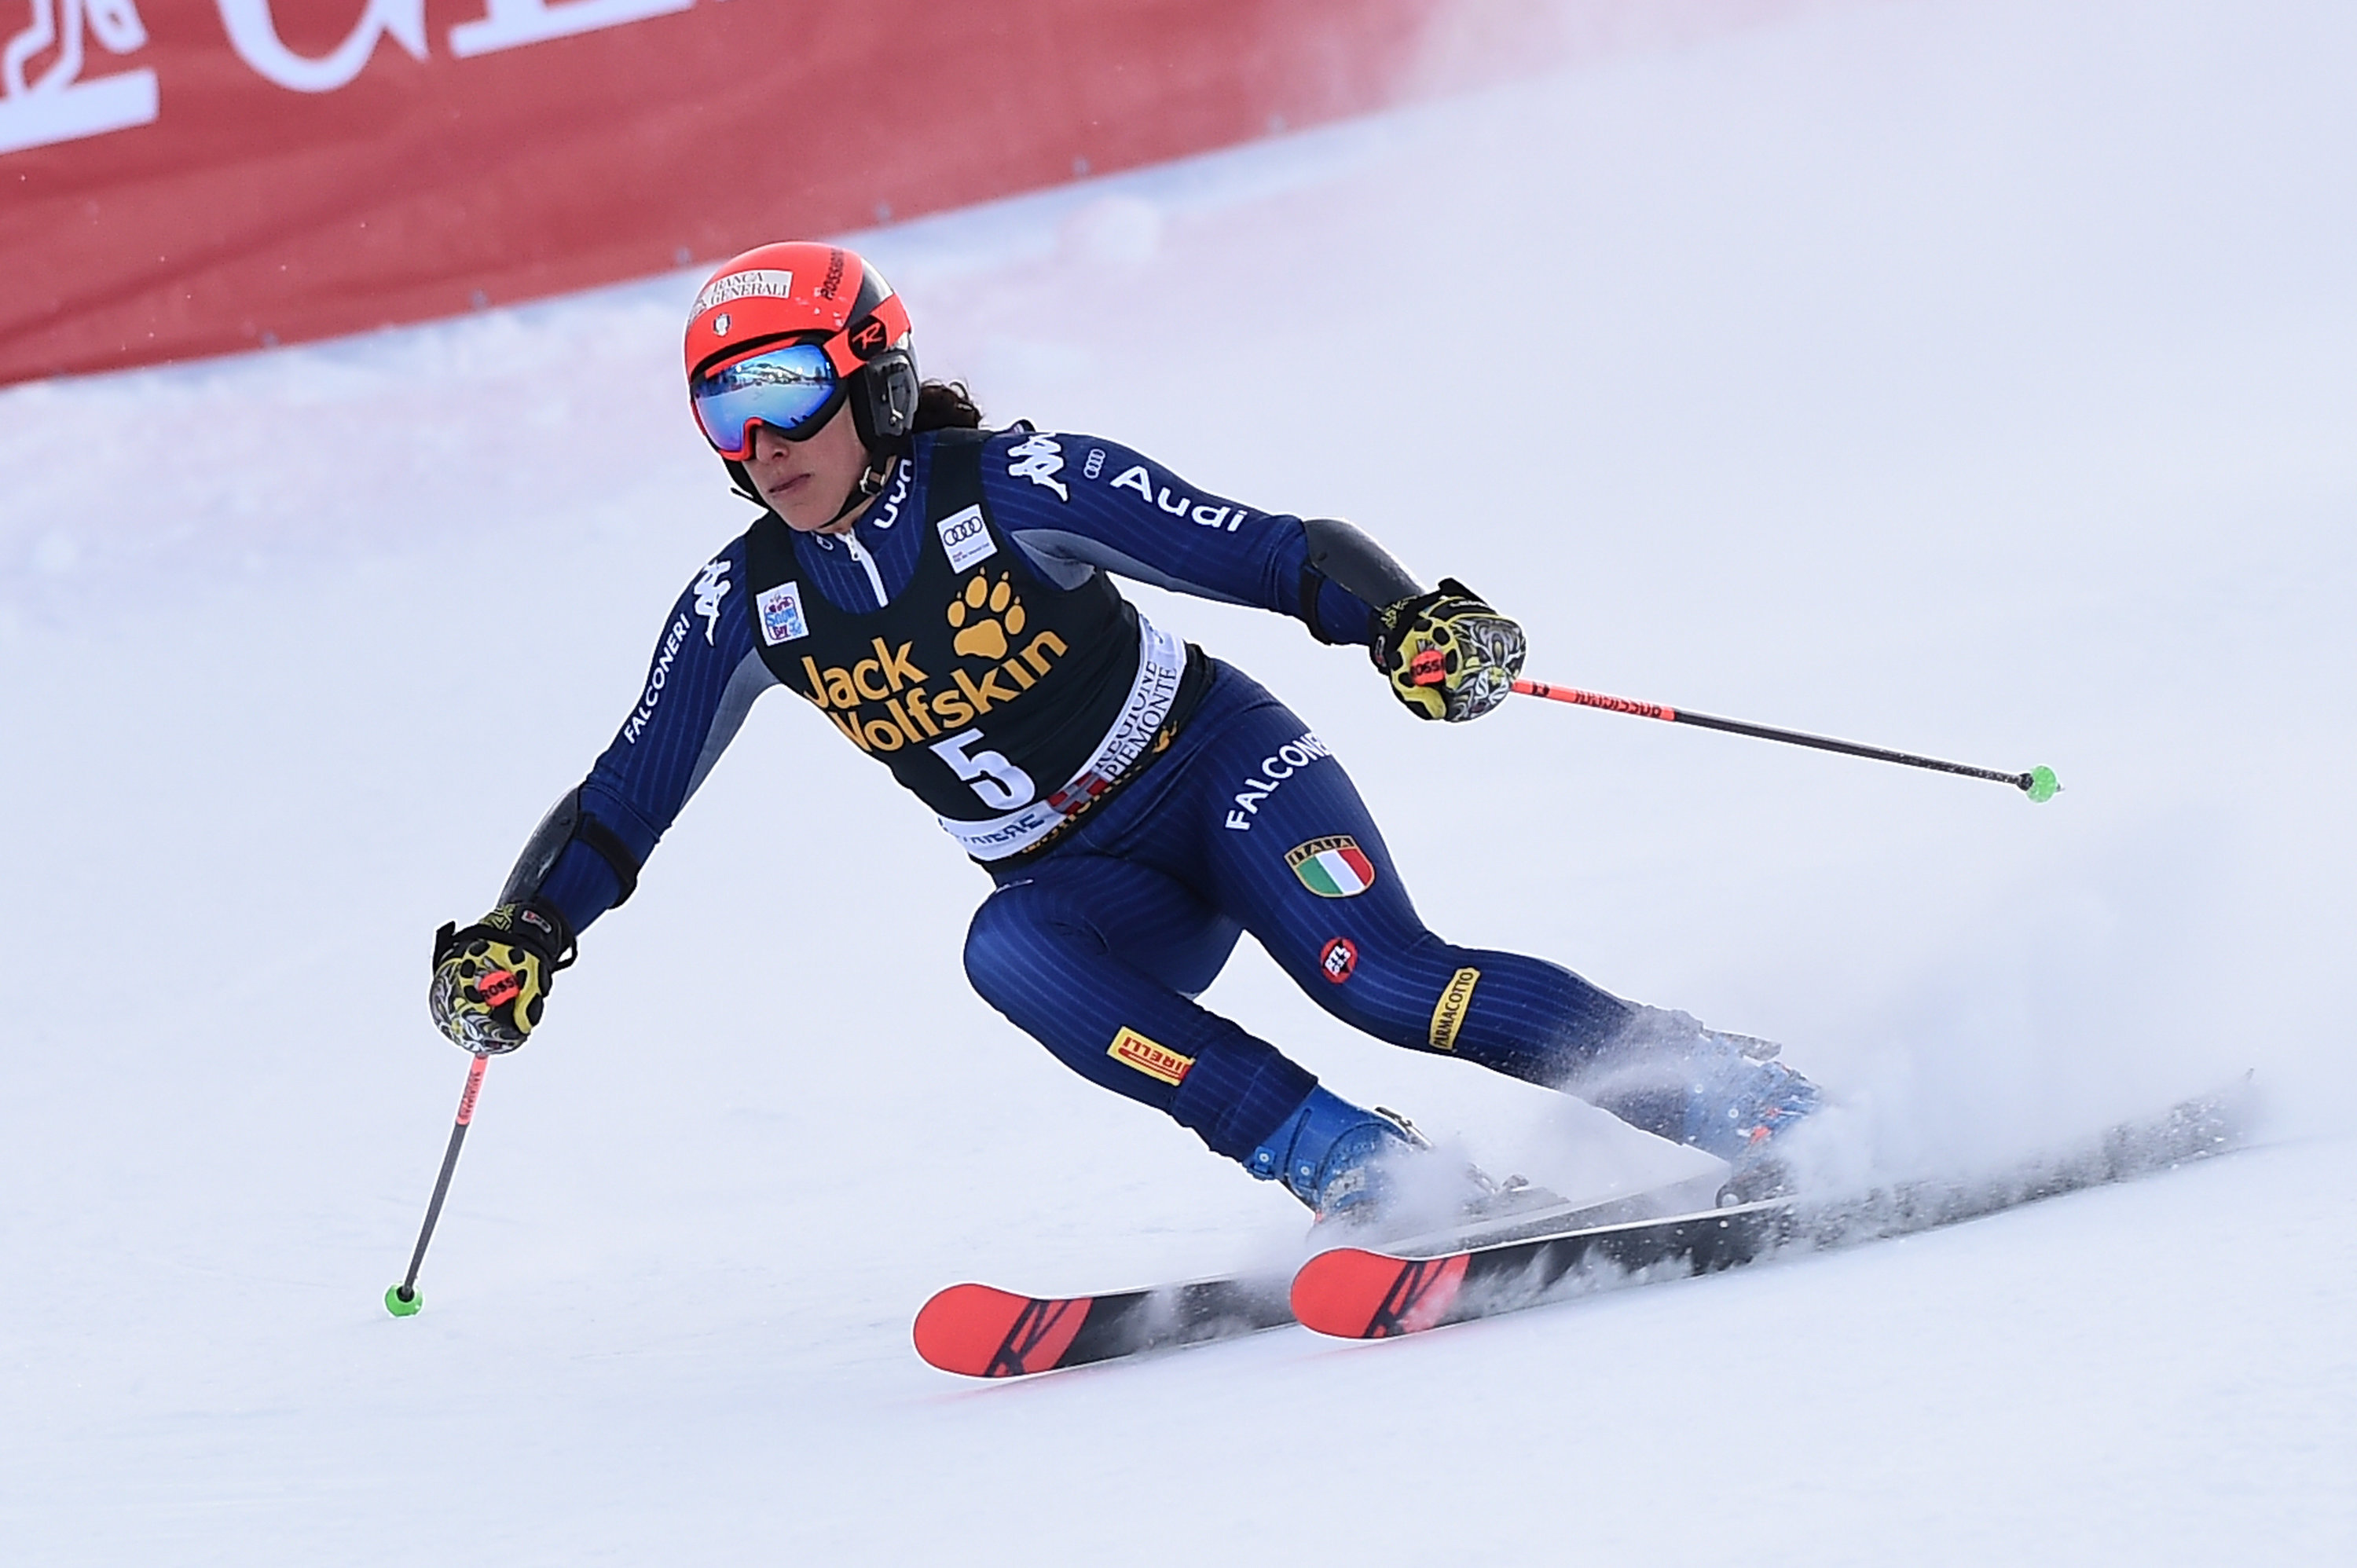 Brignone seconda in discesa a Garmisch, Gross scivola nello slalom